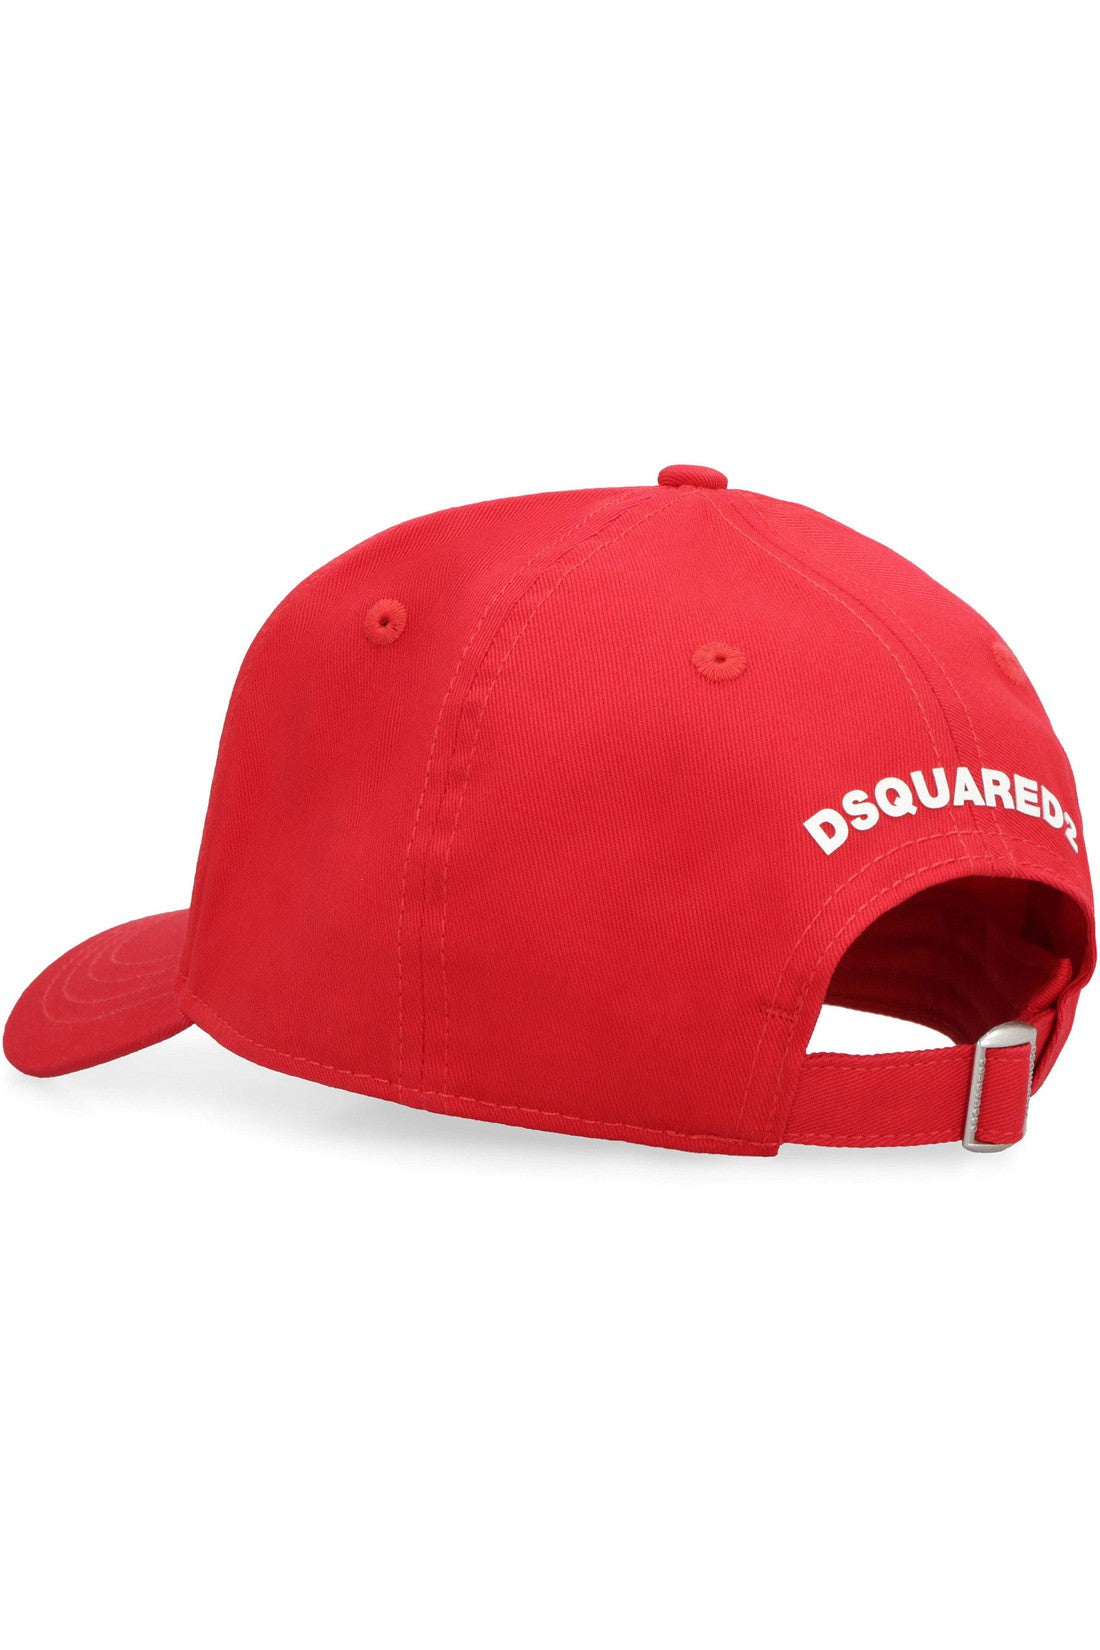 Dsquared2-OUTLET-SALE-Baseball cap-ARCHIVIST